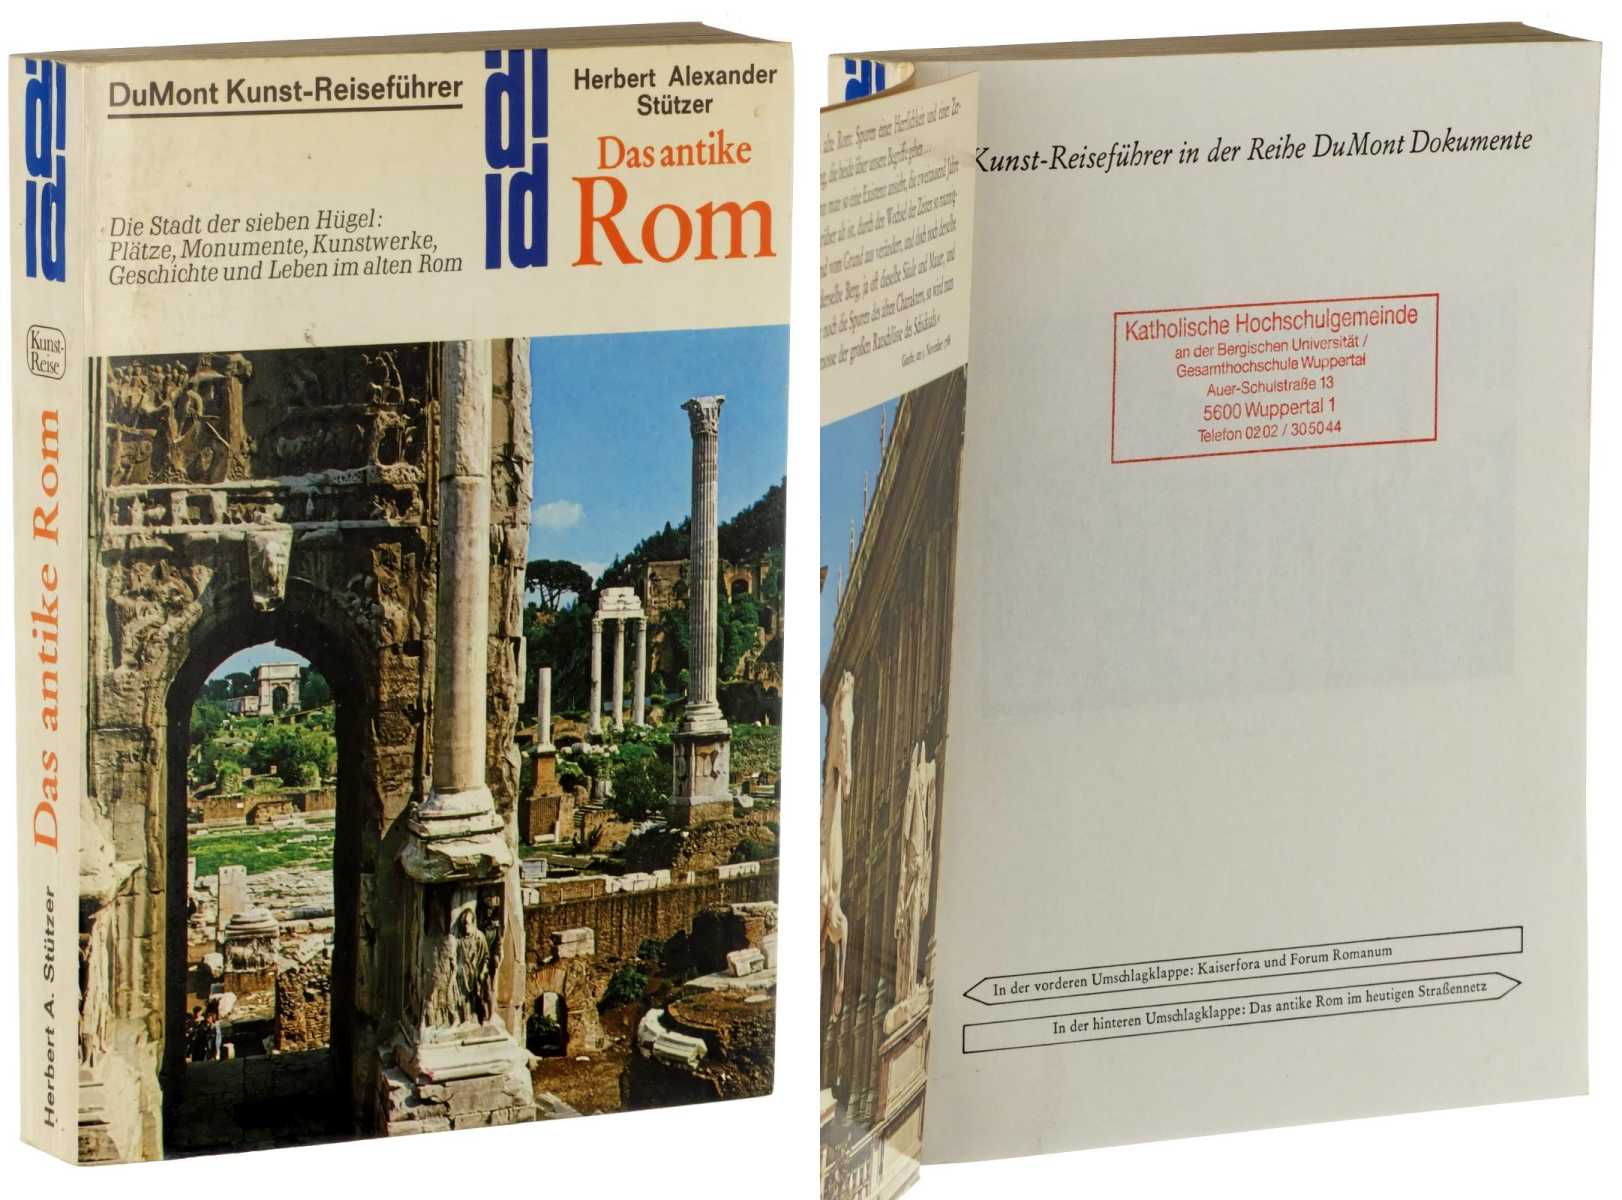 Stützer, Herbert Alexander:  Das antike Rom. Die Stadt der 7 Hügel: Plätze, Monumente, Kunstwerke ; Geschichte und Leben im alten Rom. 